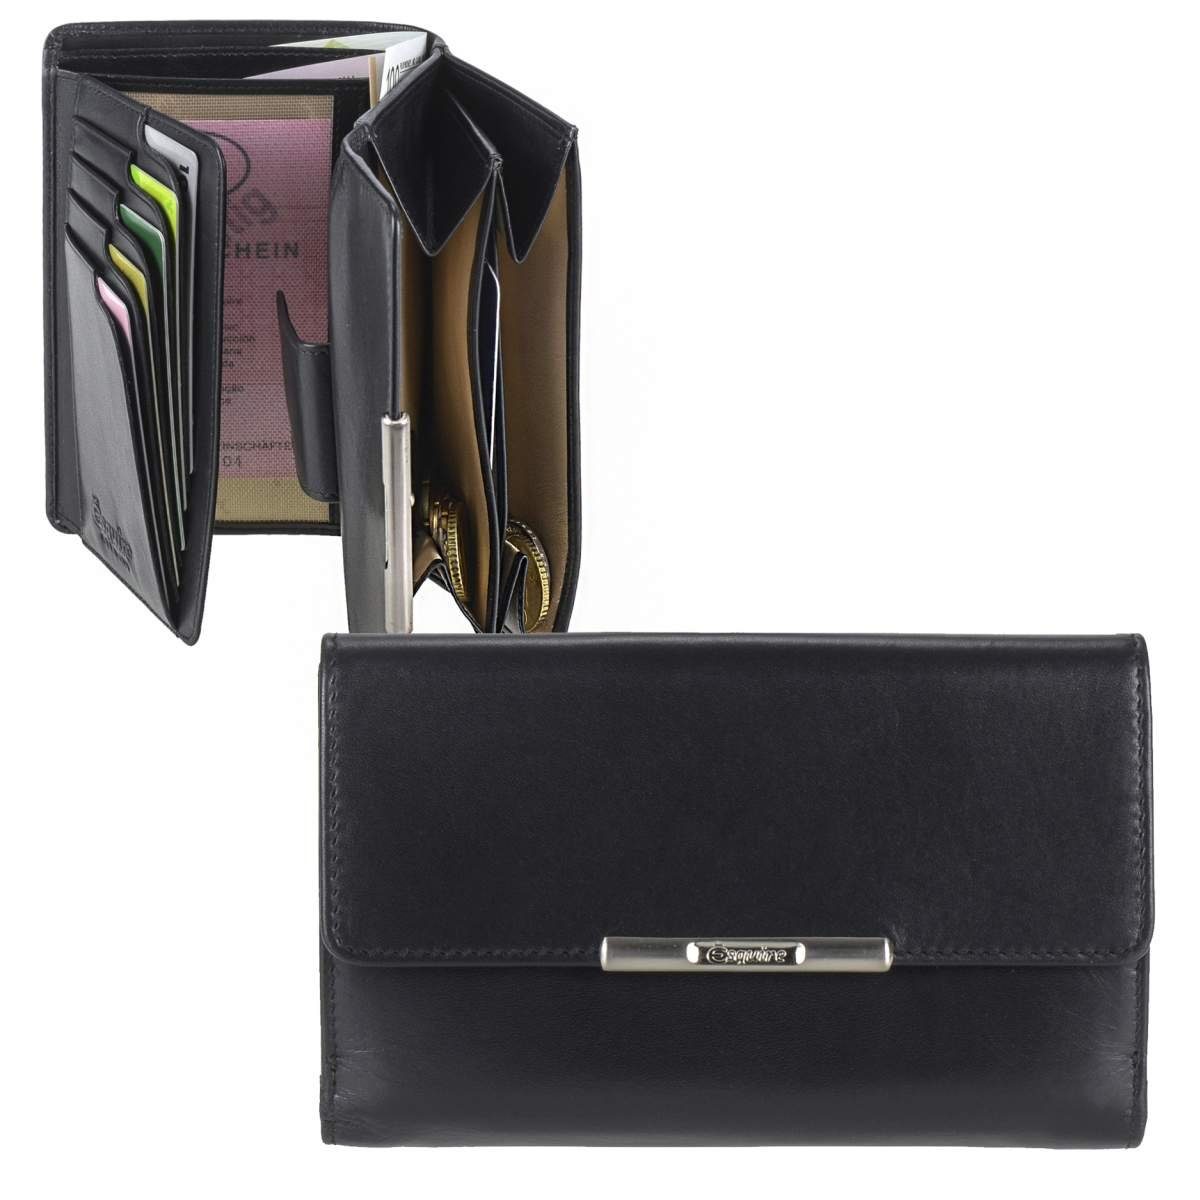 Esquire Geldbörse Helena, Portemonnaie, mit RFID Schutz gegen Datendiebstahl, 15 Kartenfächer schwarz